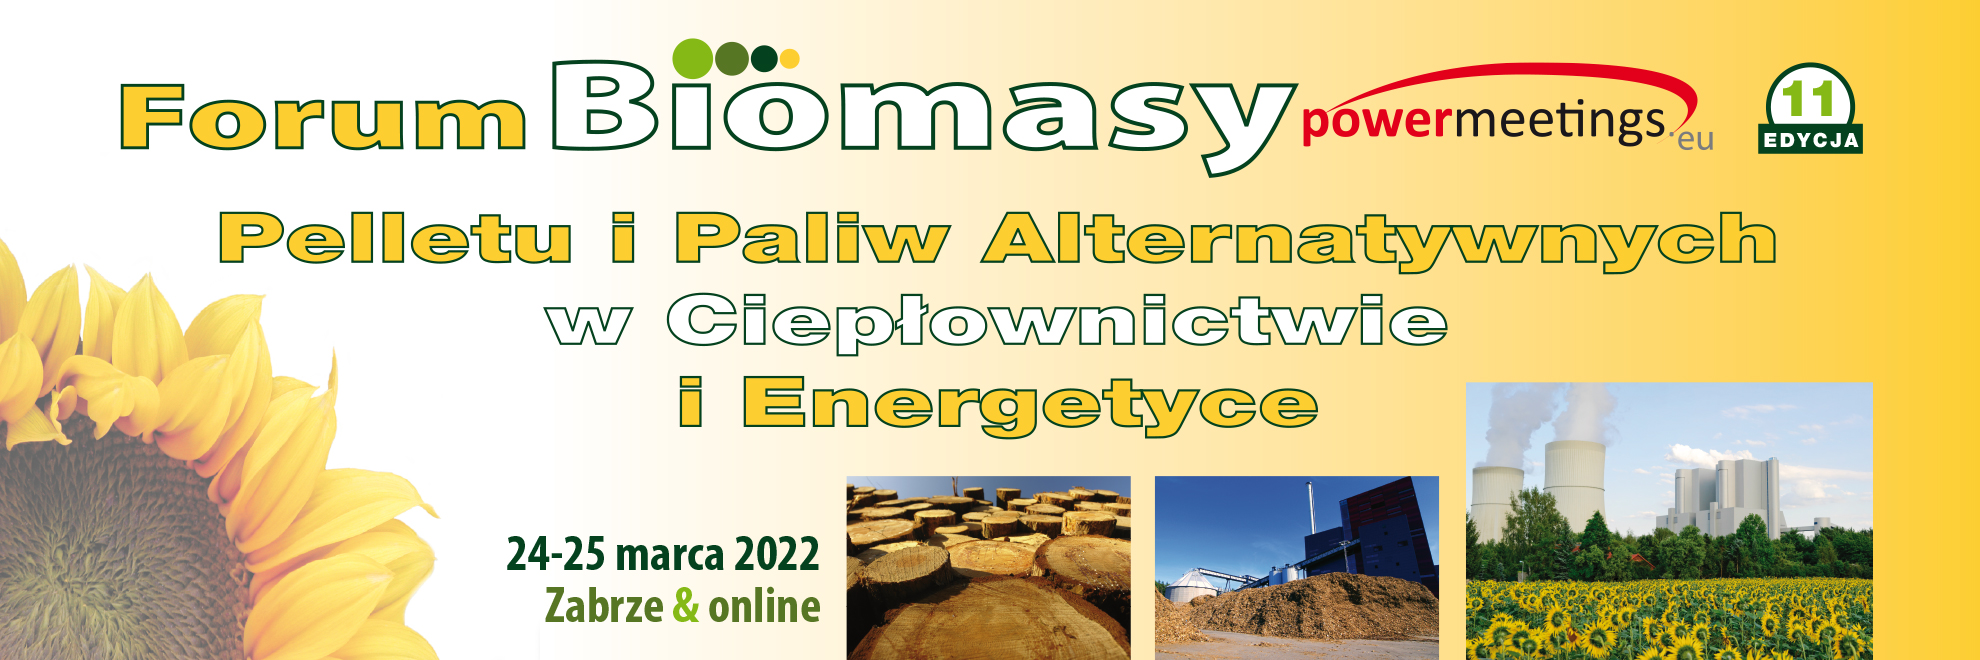 XI Forum Biomasy, Pelletu i RDF w Ciepłownictwie i Energetyce 2022